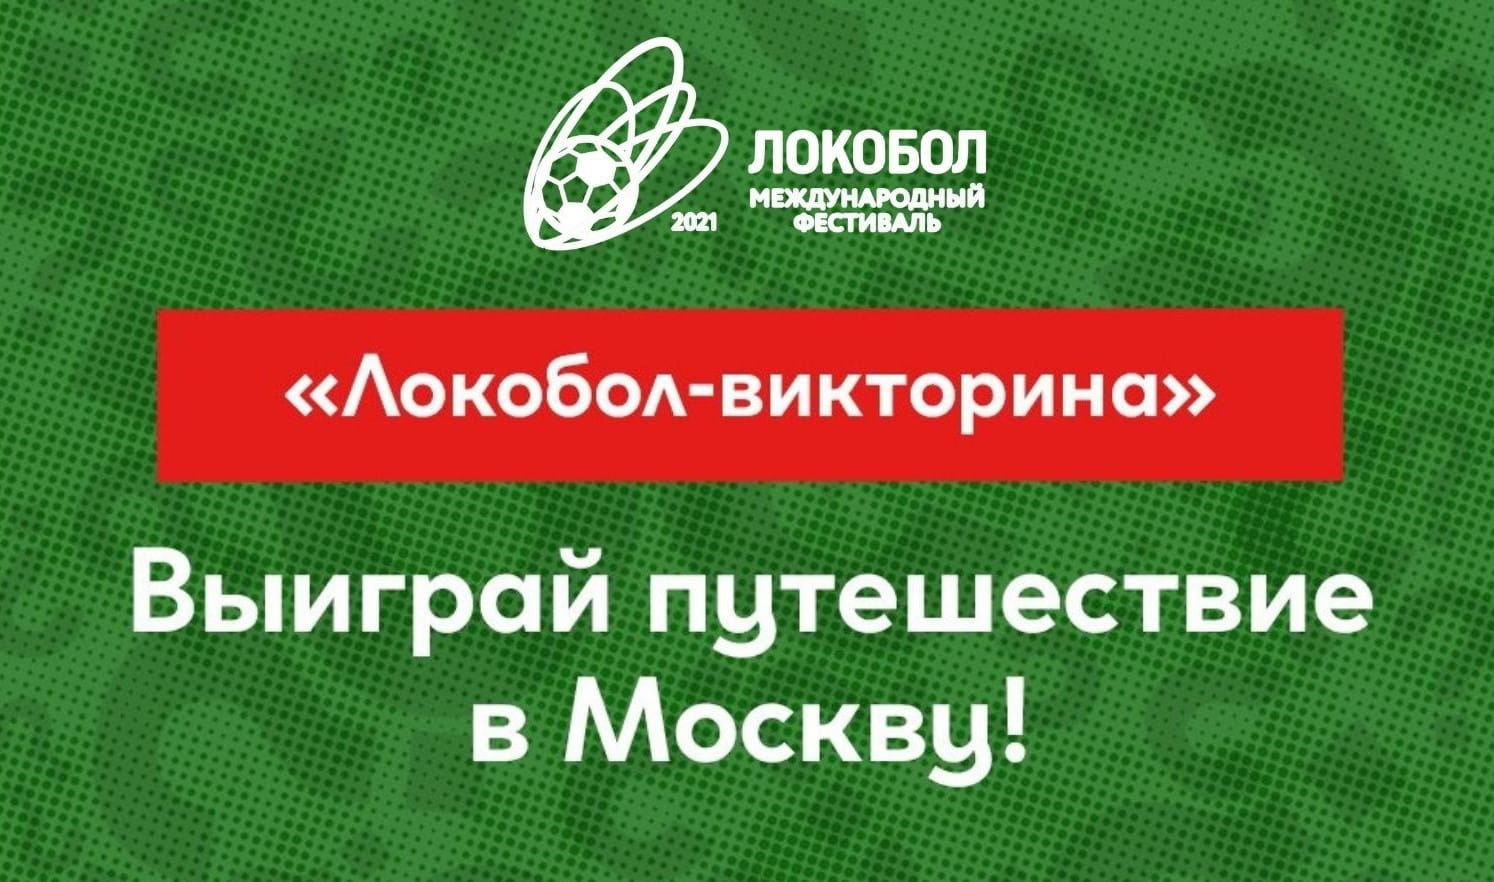 «Локобол - викторина»: выиграй путешествие на Суперфинал в Москву!